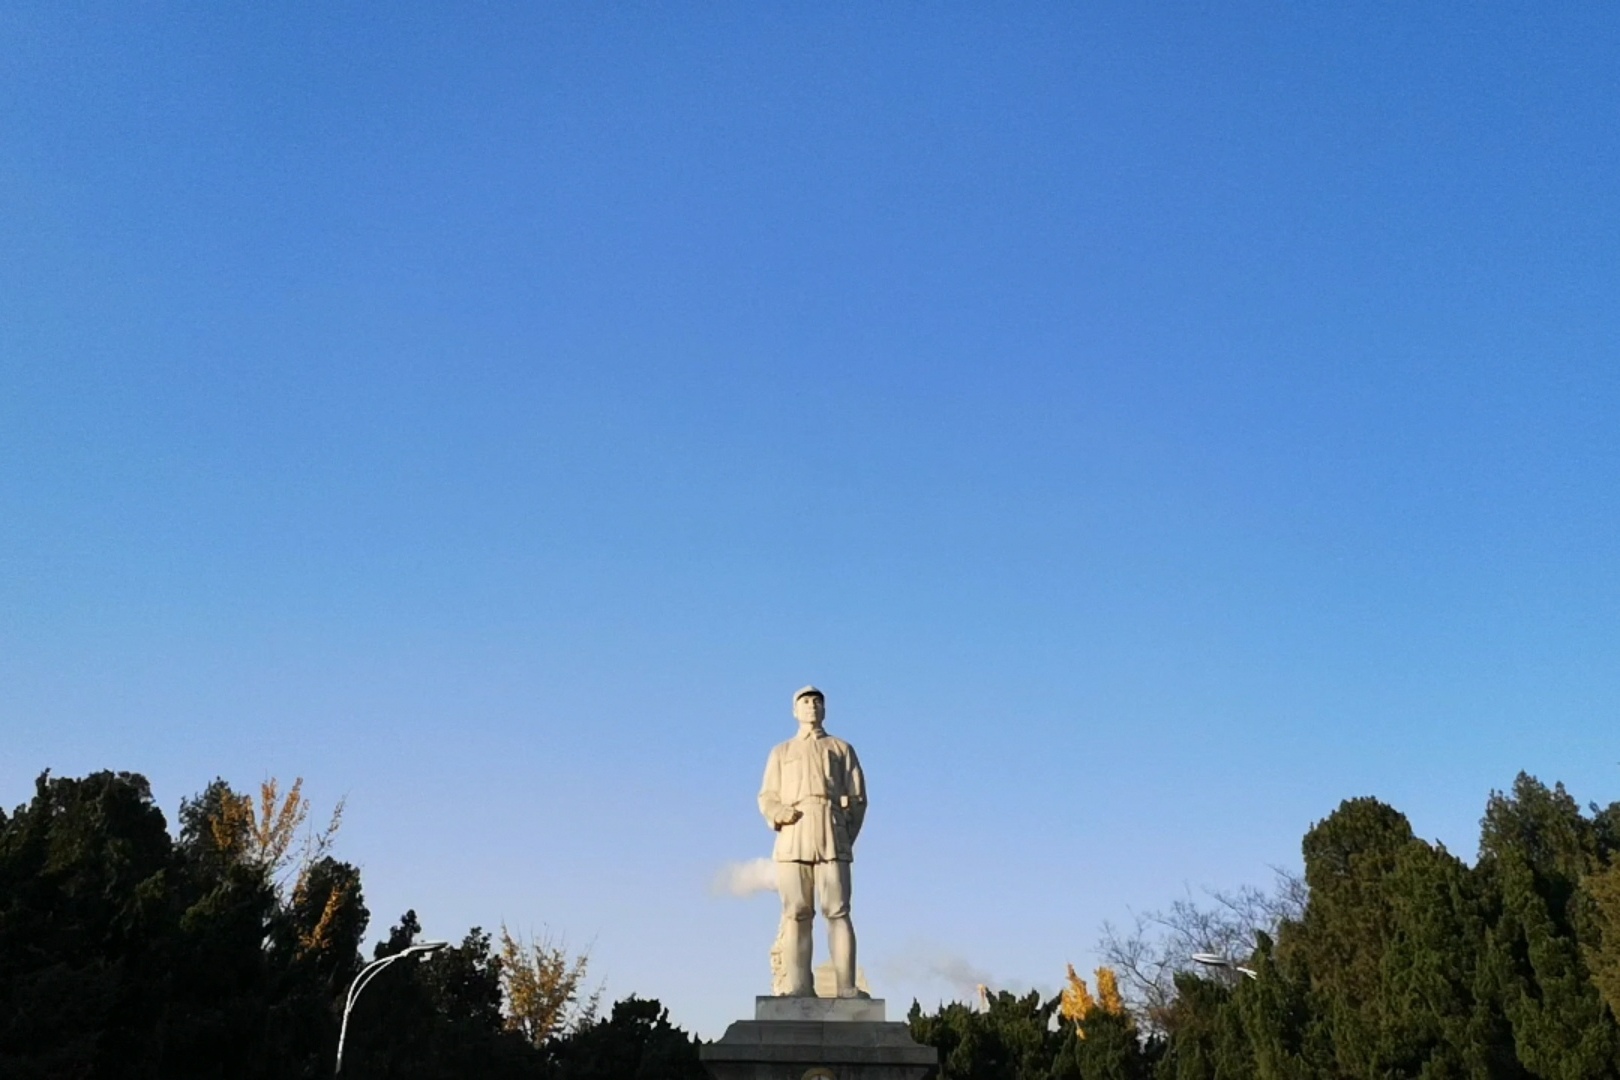 实拍皖北地区规模最大的彭雪枫将军烈士陵园,面积大约12万平方米